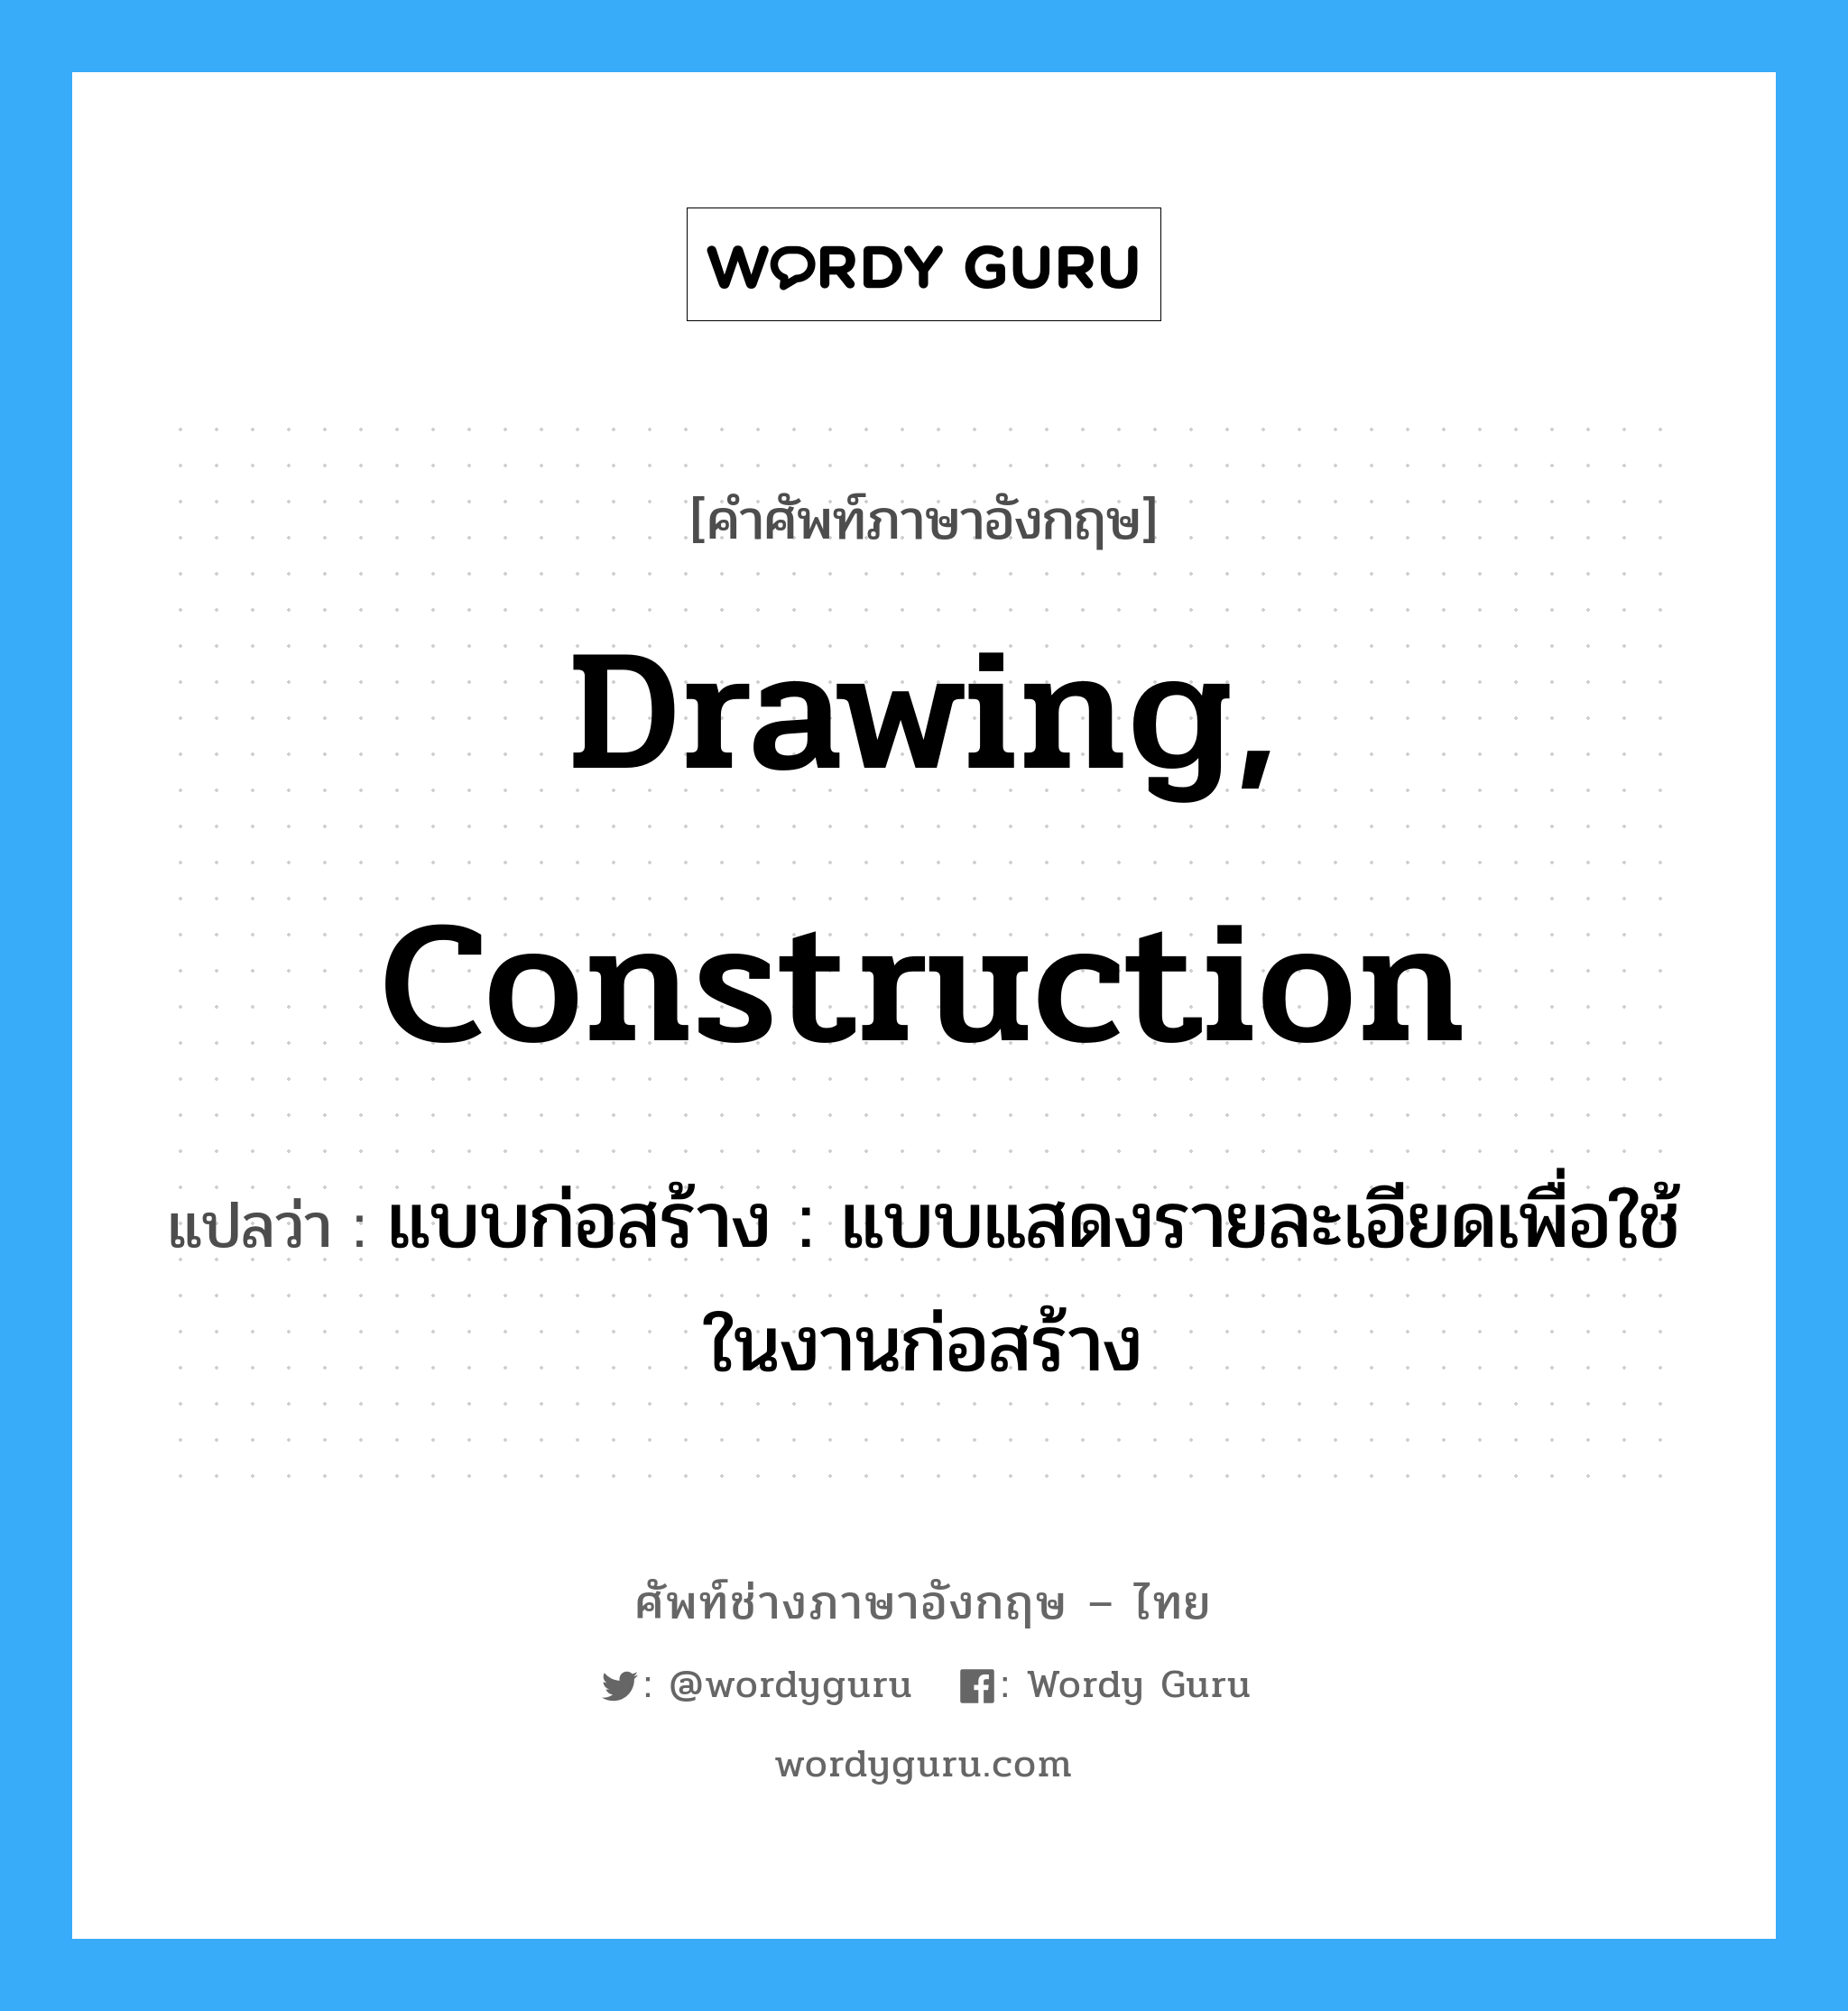 drawing, construction แปลว่า?, คำศัพท์ช่างภาษาอังกฤษ - ไทย drawing, construction คำศัพท์ภาษาอังกฤษ drawing, construction แปลว่า แบบก่อสร้าง : แบบแสดงรายละเอียดเพื่อใช้ในงานก่อสร้าง